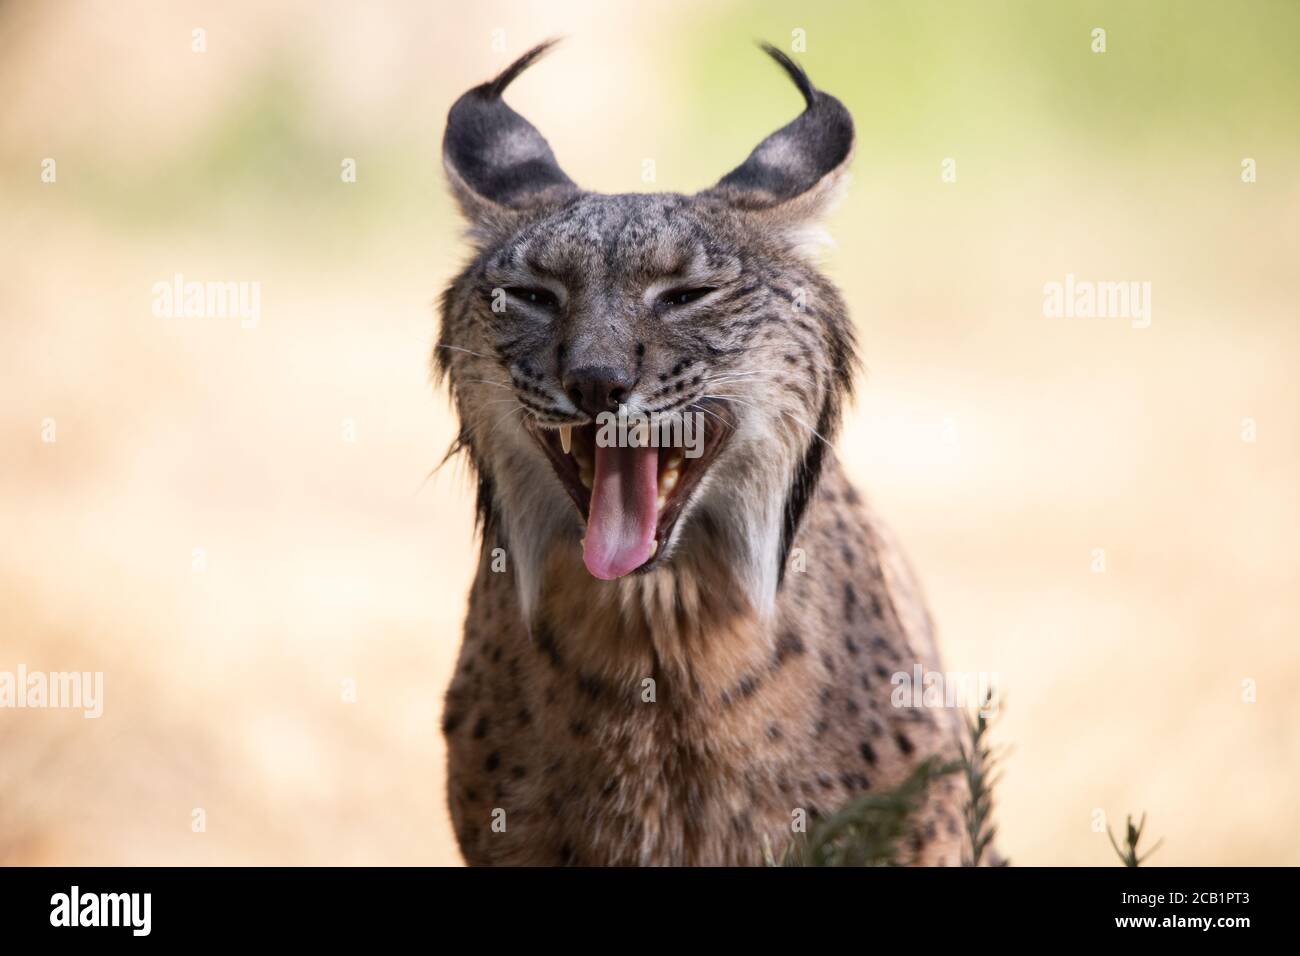 Joli portrait de visage d'un lynx ibérique bâillant dans le sauvage Banque D'Images